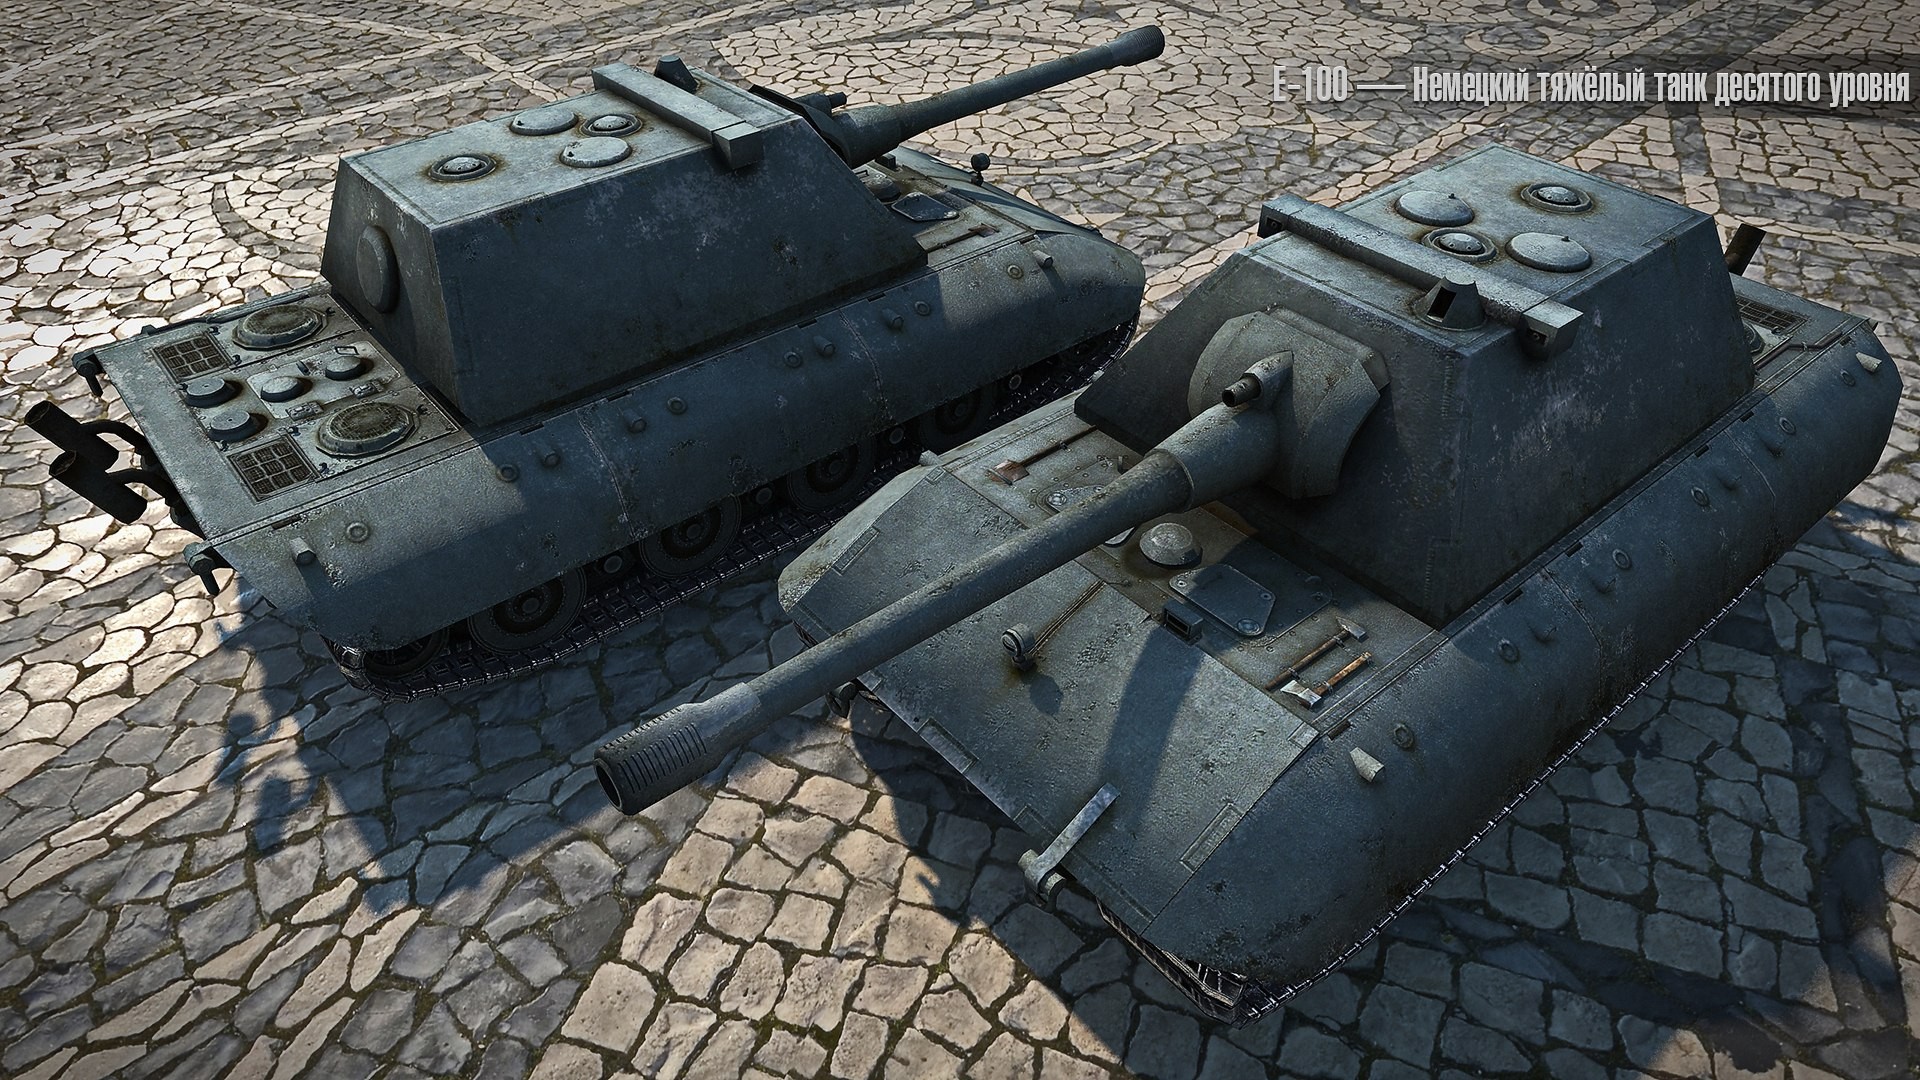 General 1920x1080 World of Tanks tank wargaming video games Jagdpanzer E 100 German tanks